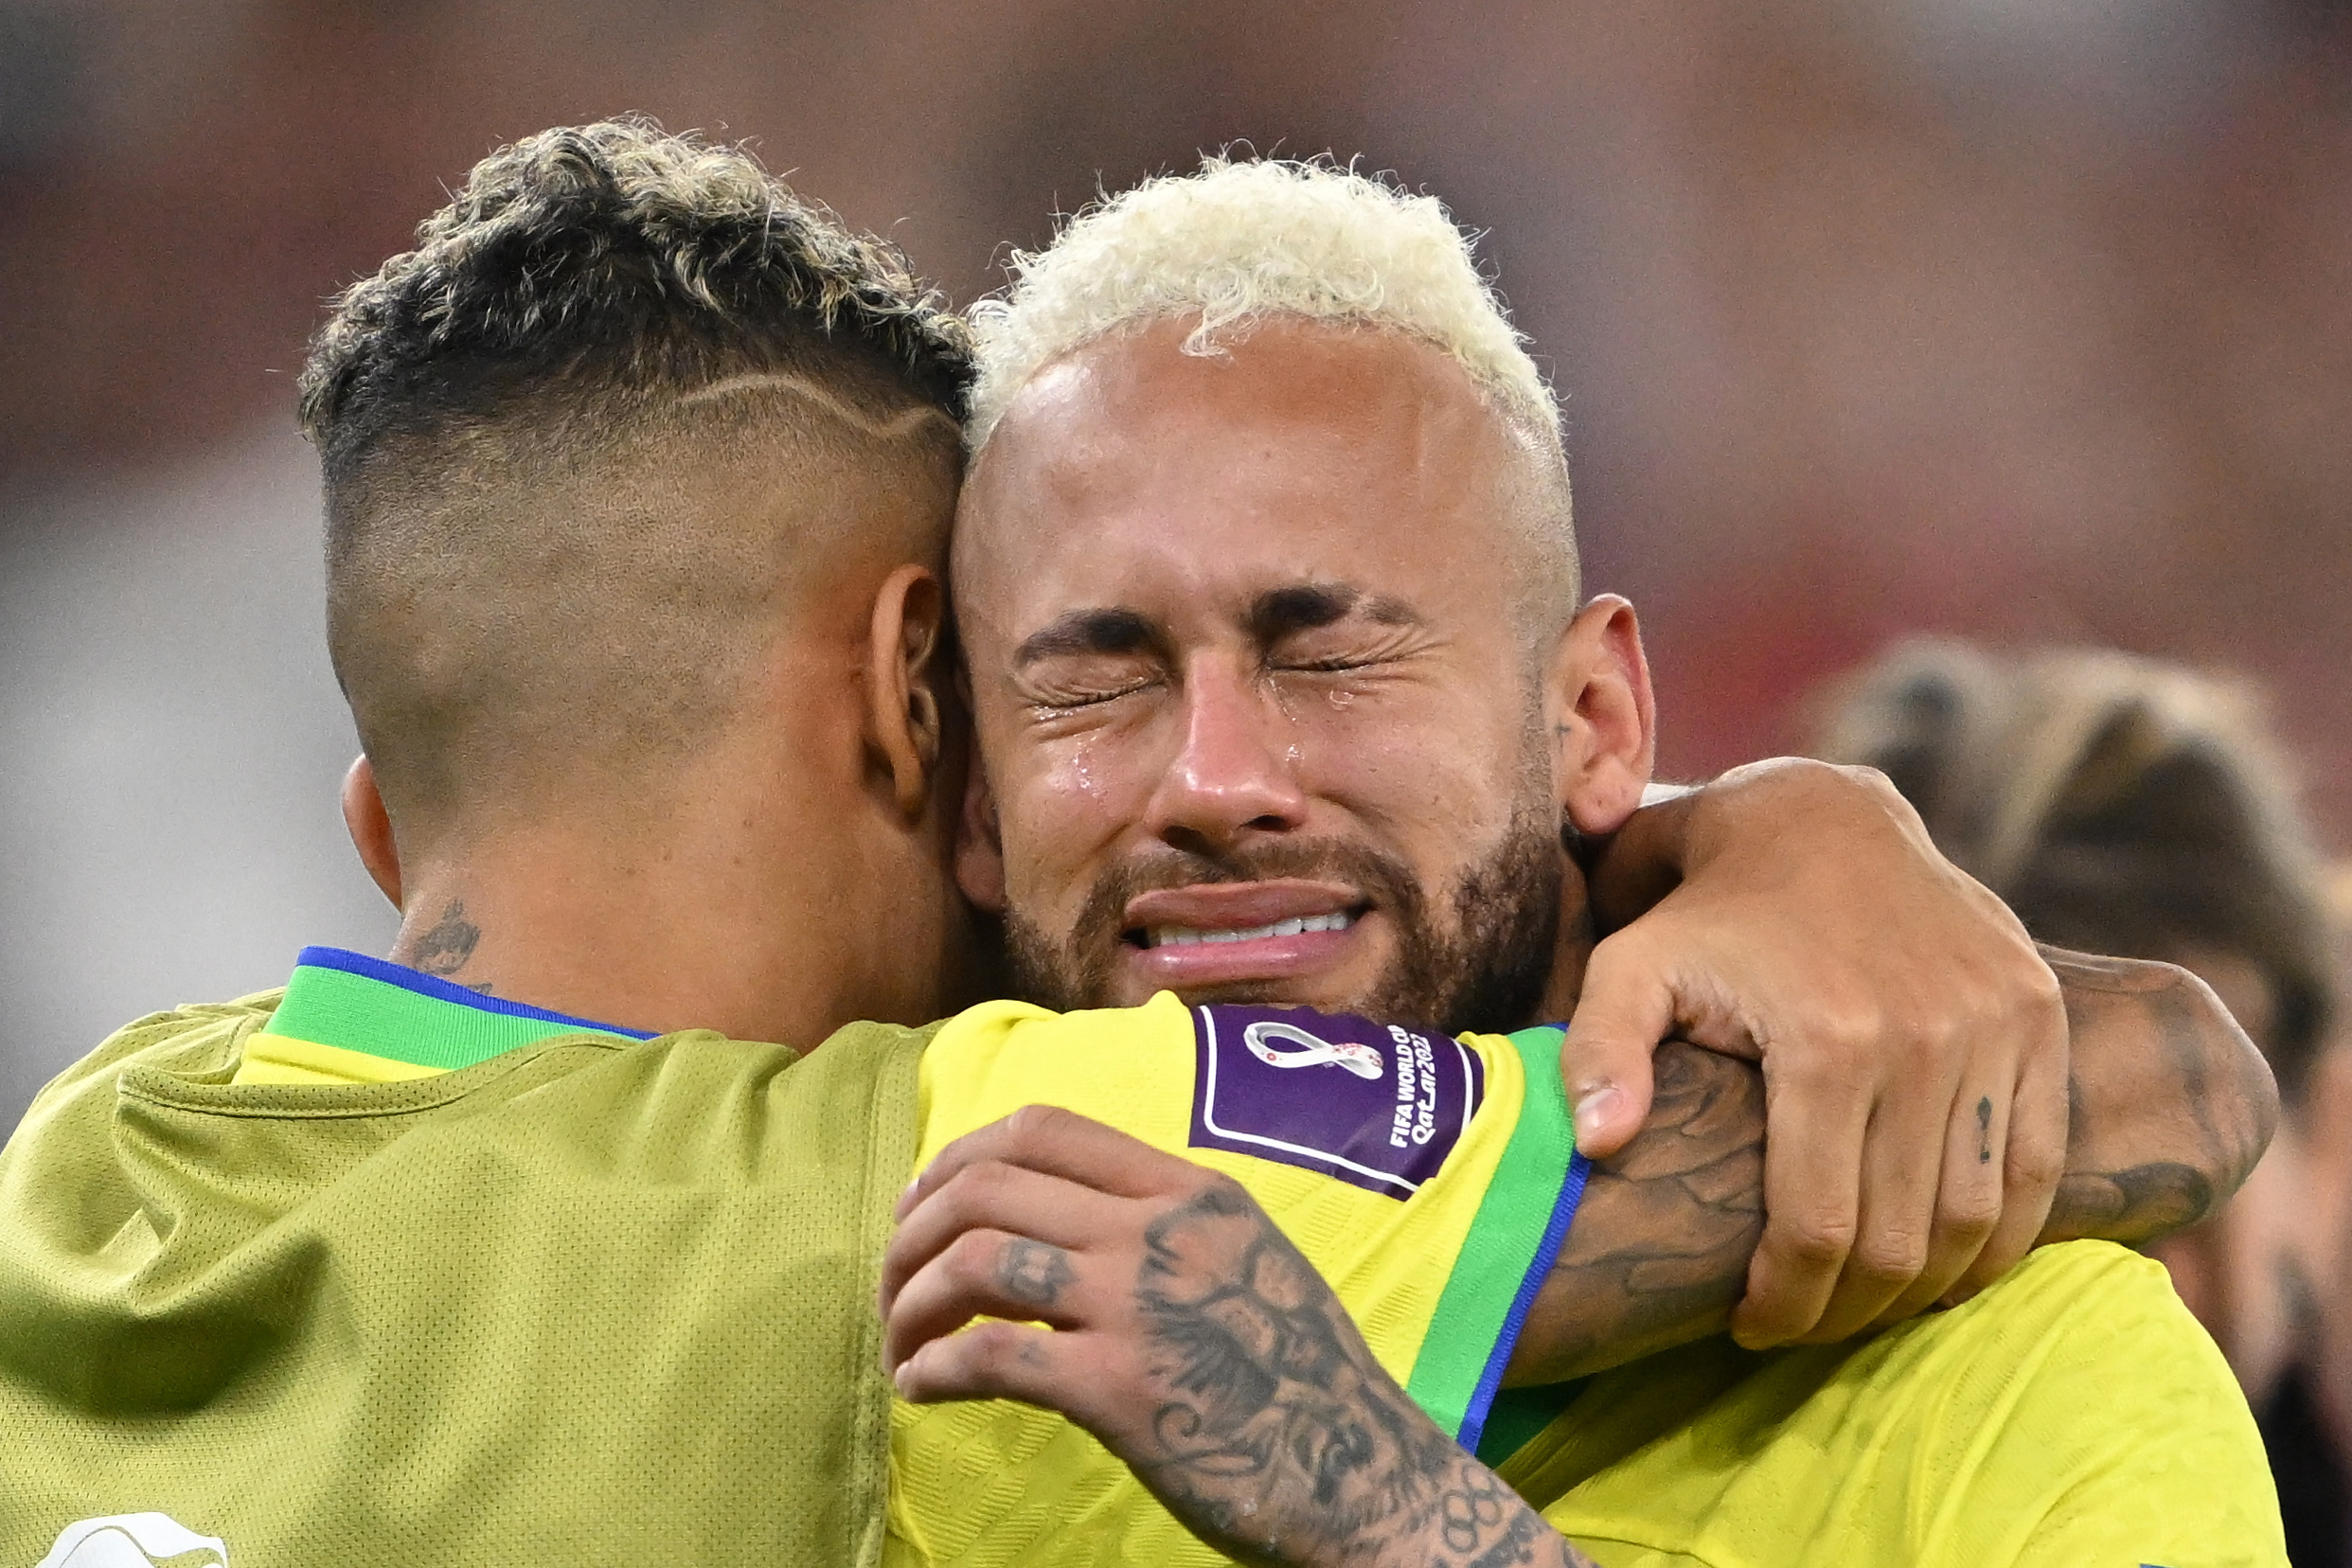 Đây là một tin buồn cho những fan của Neymar khi anh đang được coi là một trong những ngôi sao xuất sắc nhất của đội tuyển này. Hãy xem hình ảnh liên quan để tưởng nhớ về Neymar và những khoảnh khắc đáng nhớ trong sự nghiệp của anh.